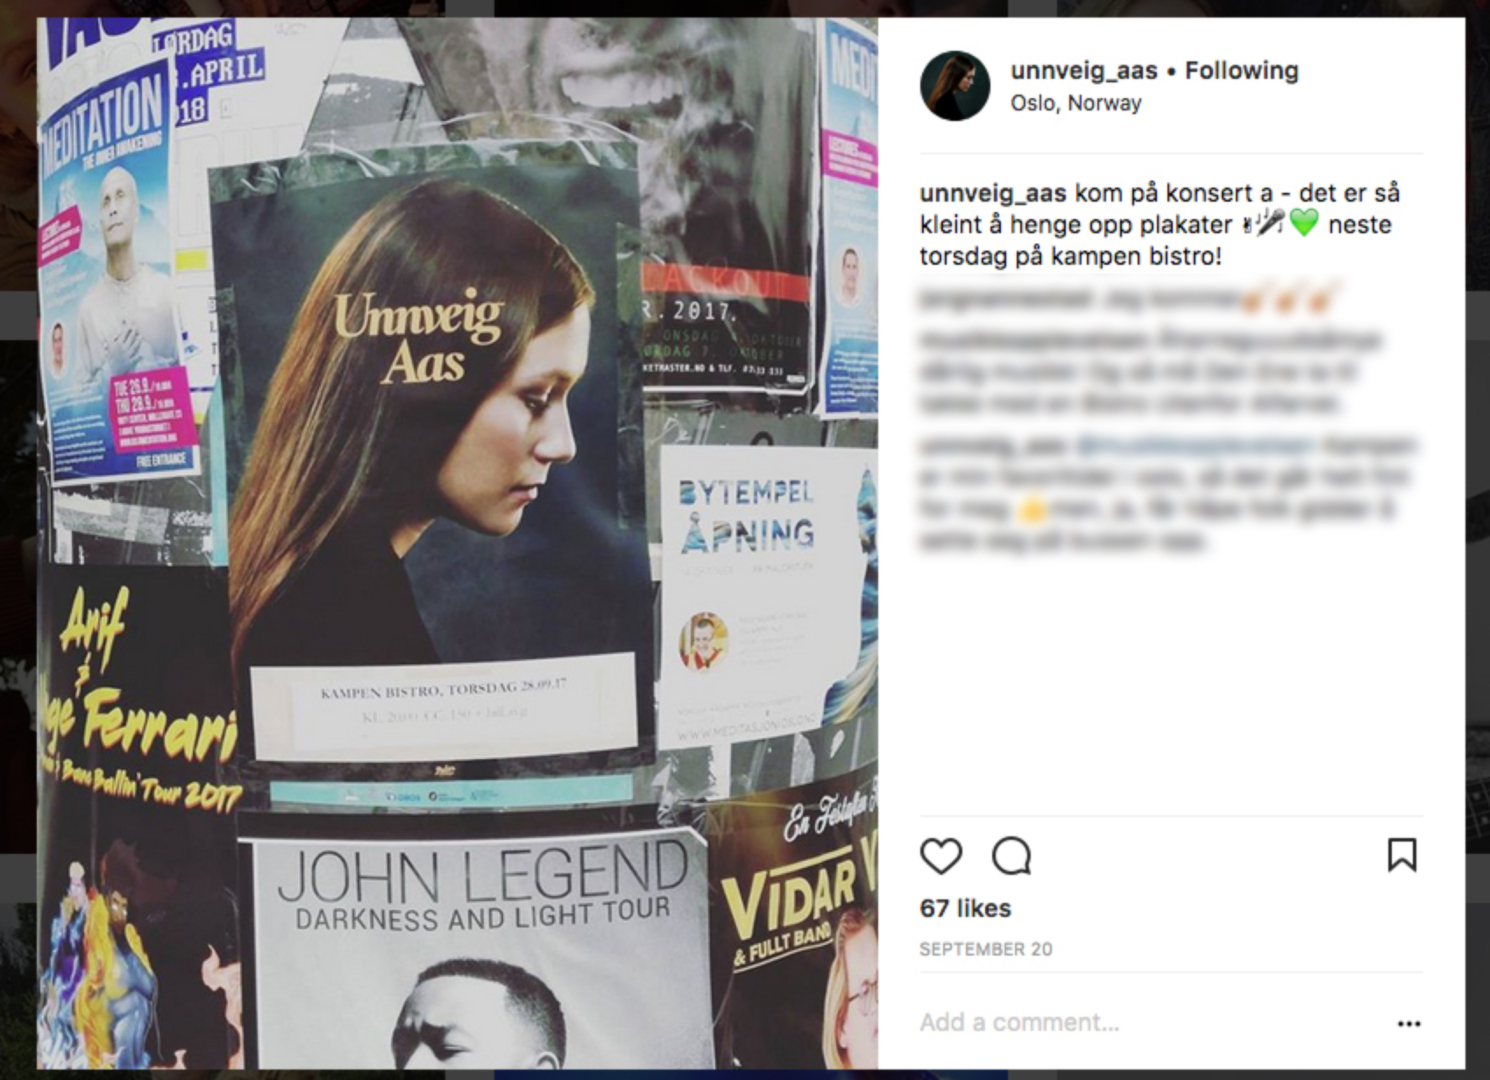 Plakaten er viktig: Konsertplakaten er fortsatt en viktig del av markedsføringen. Unnveig Aas ser at også fans deler plakaten på sosiale meder.   